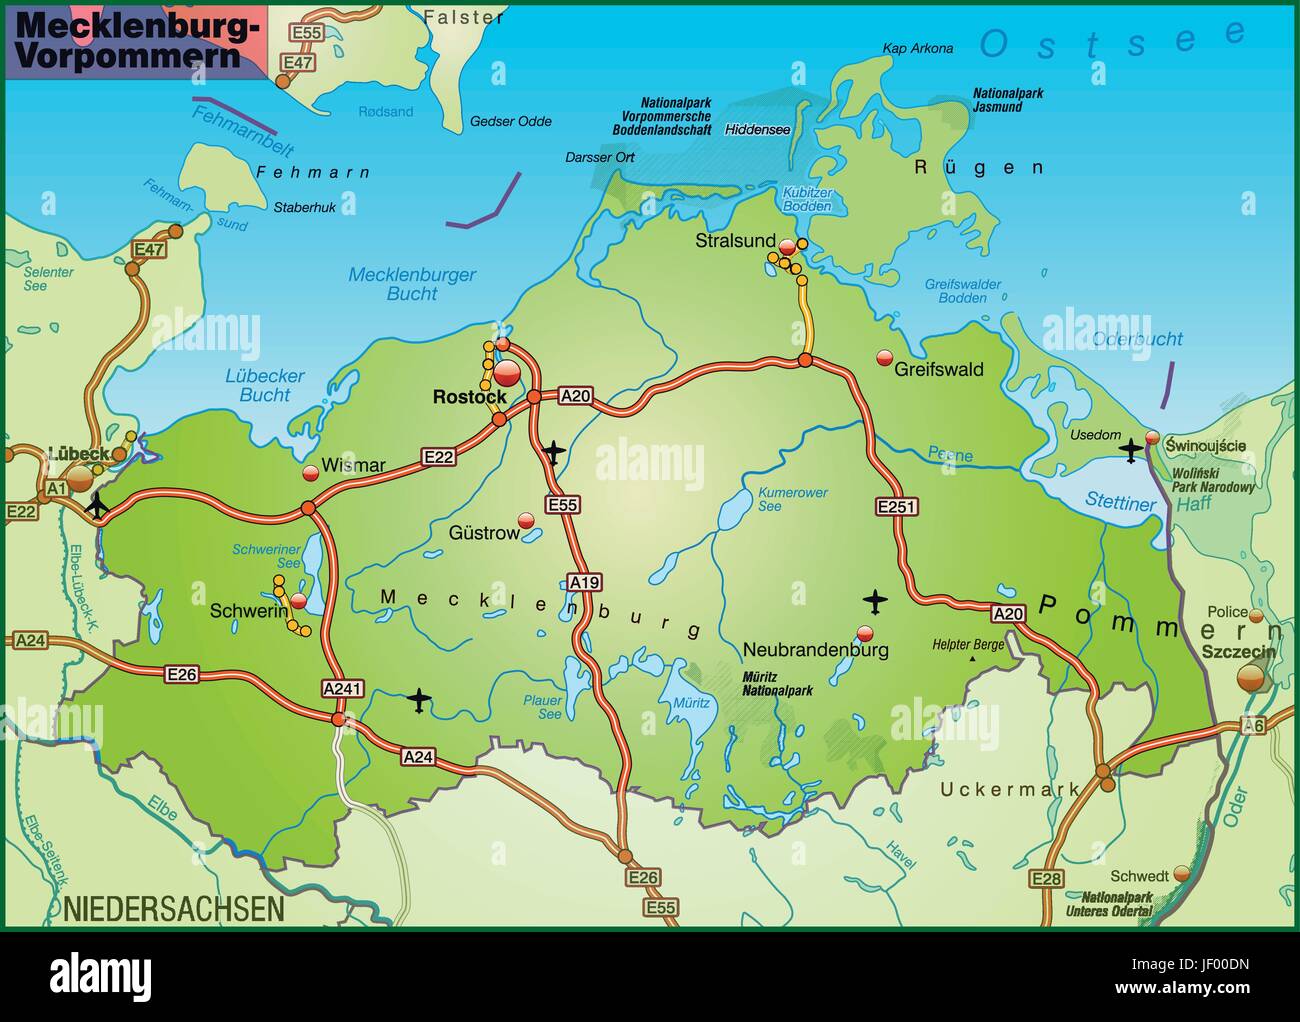 Verkehr, Transport, Autobahn, Autobahn, Mecklenburg, Karte, westlichen, Staat, Stock Vektor